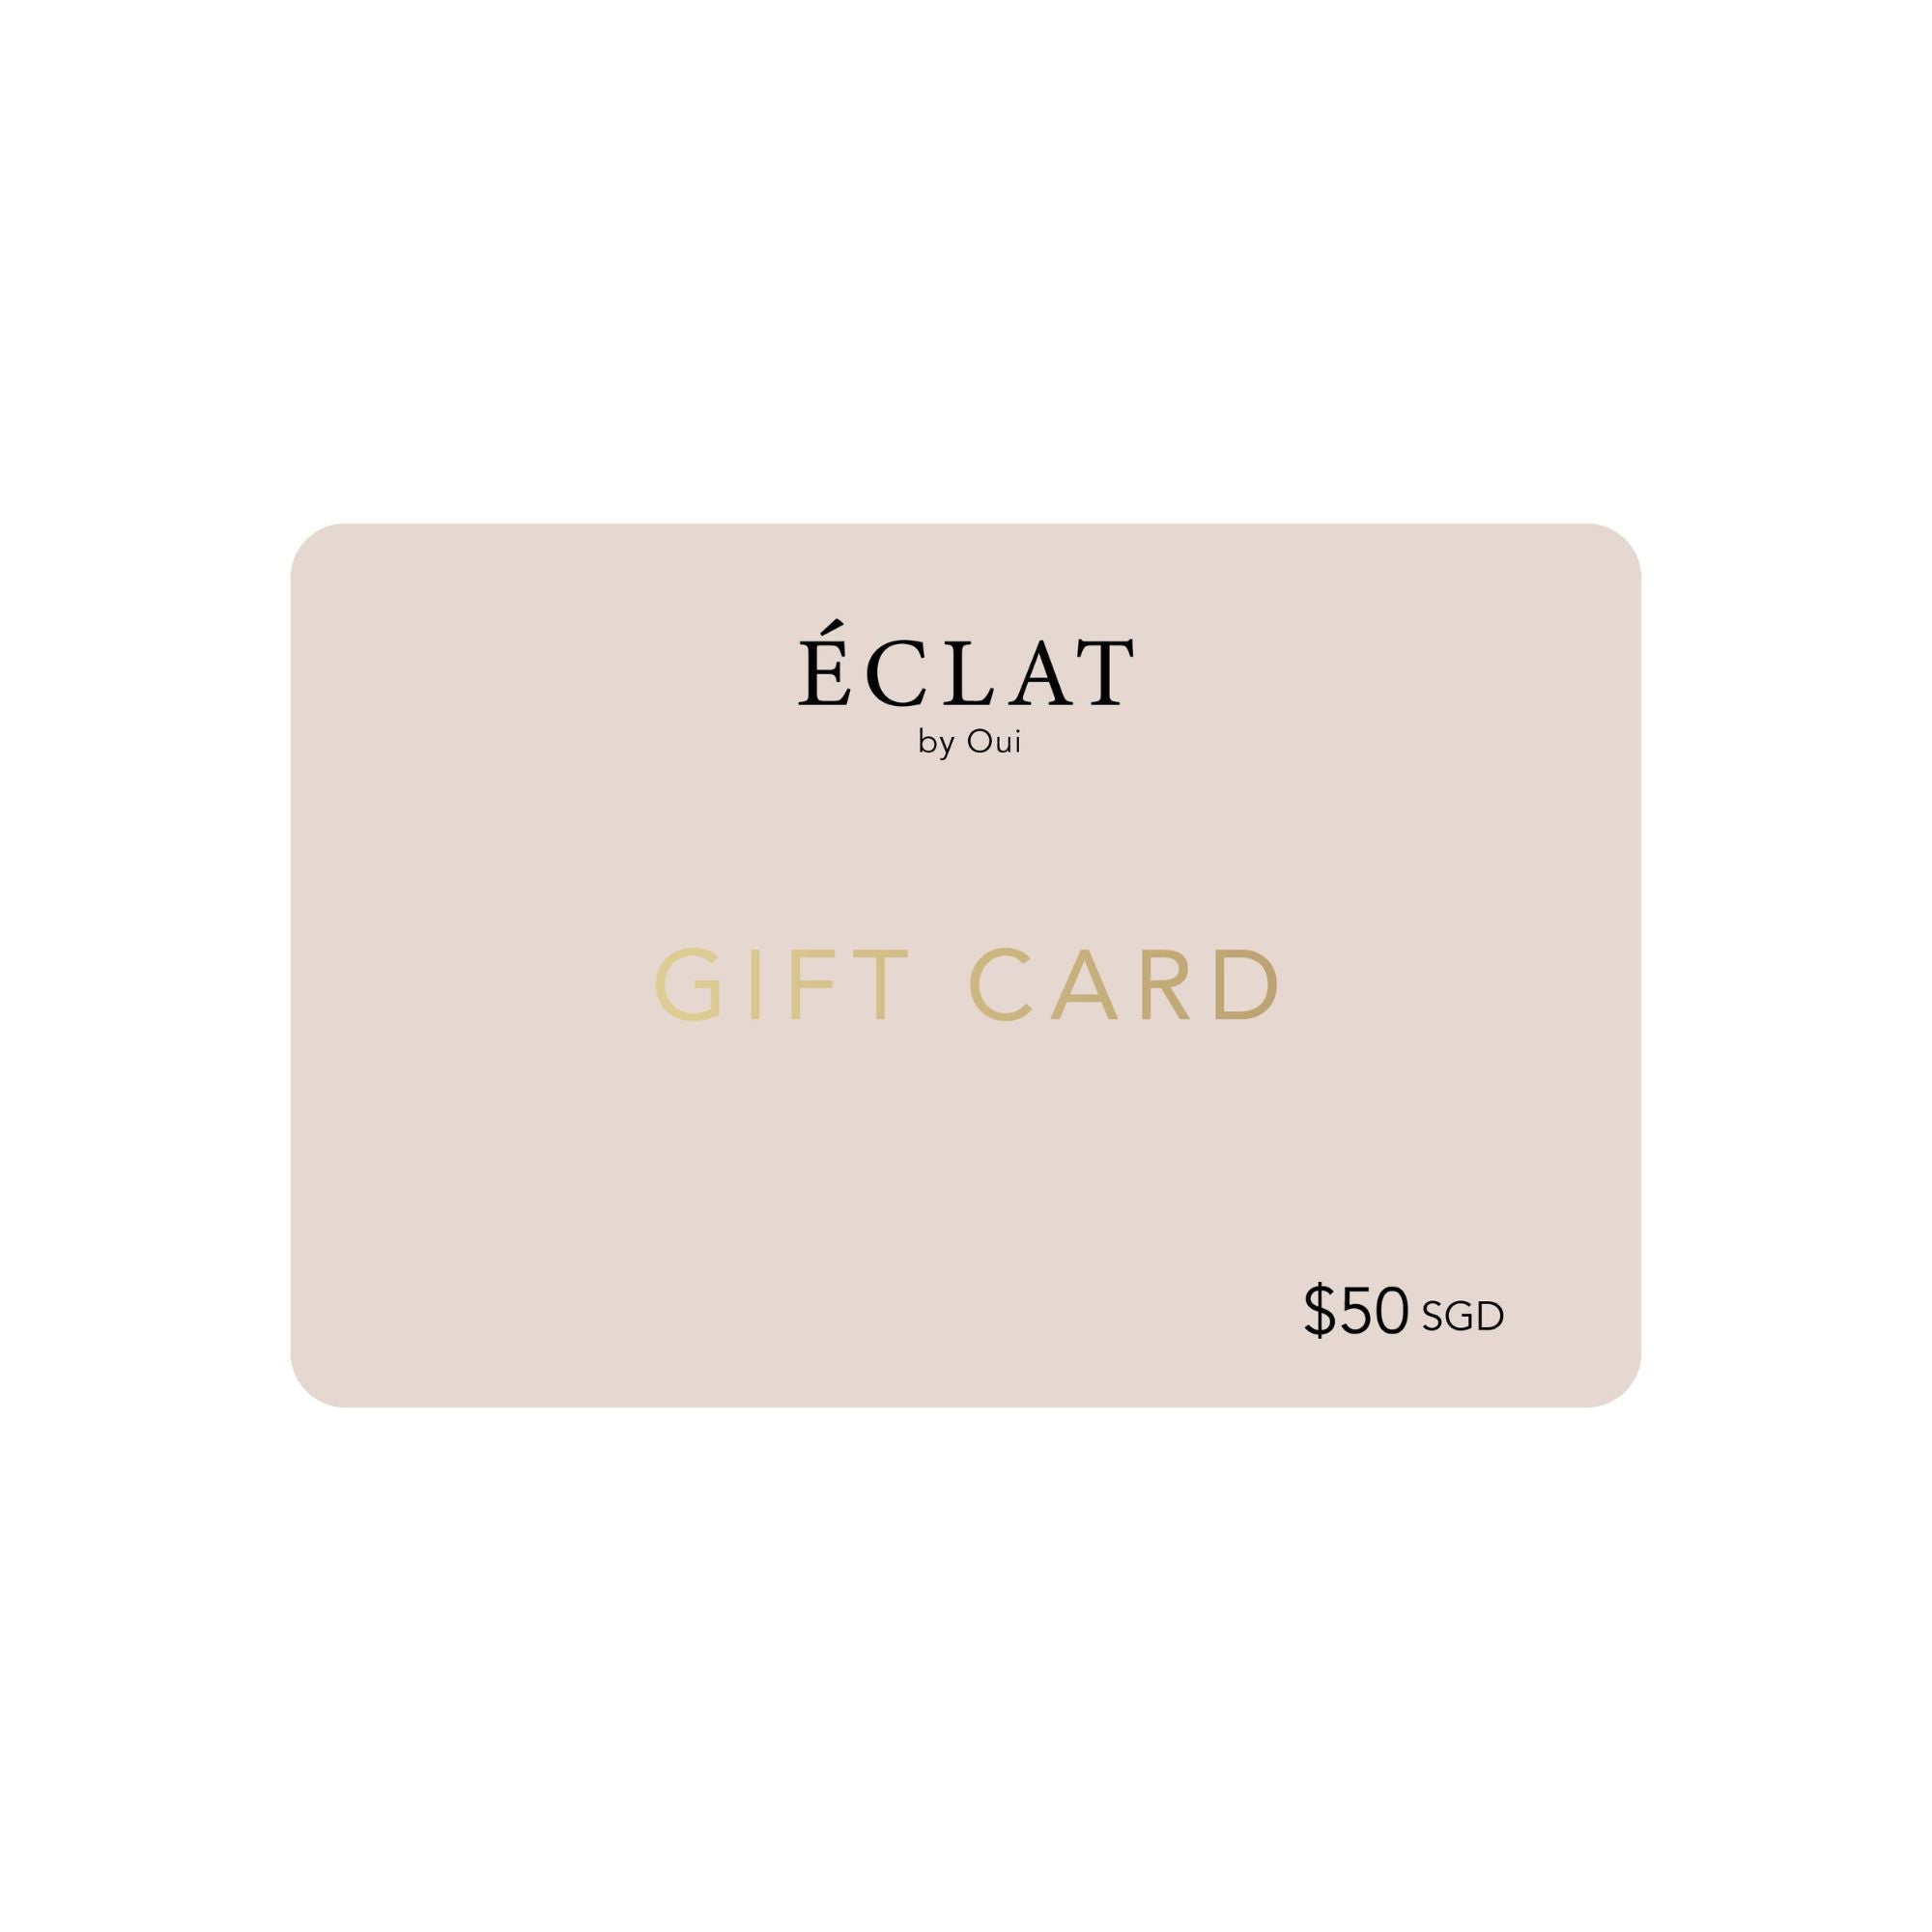 Gift Card $50 - Eclat by Oui